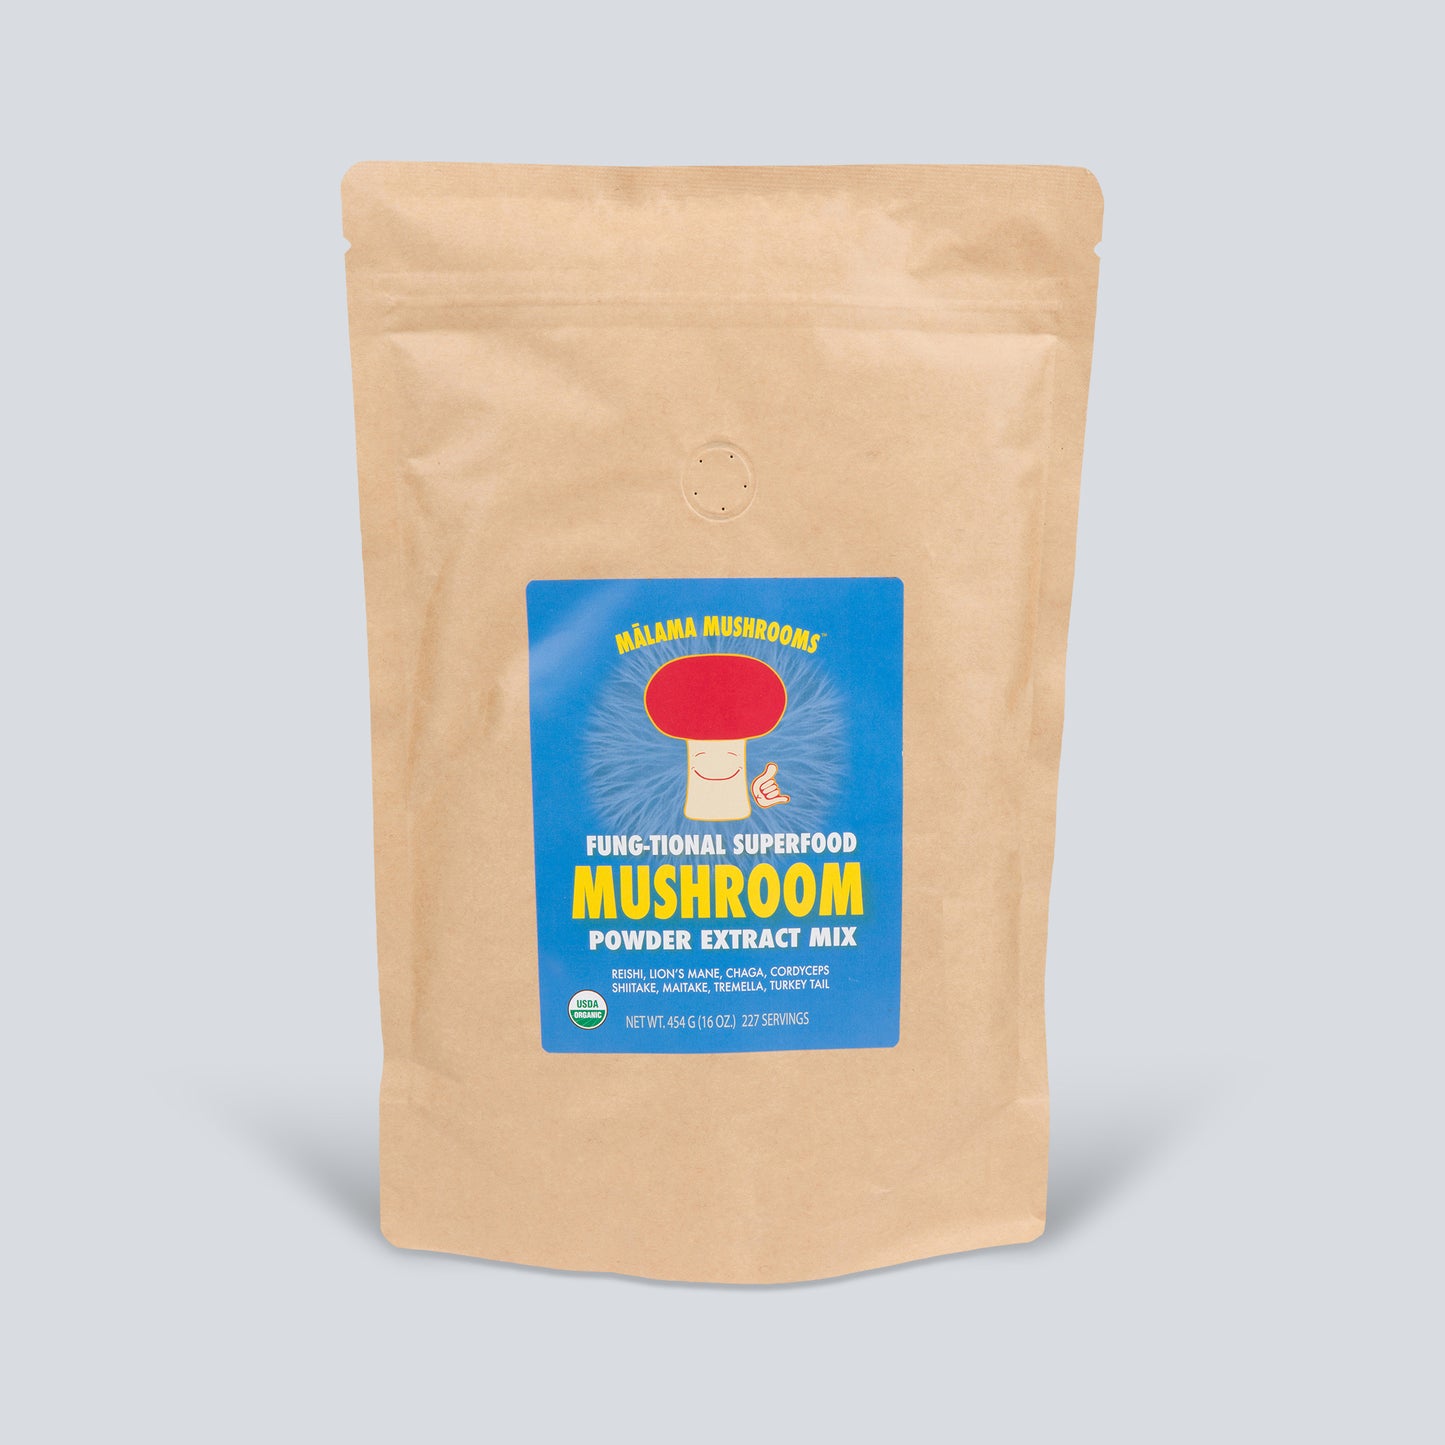 8 Mushroom Superfood Powder Mix Mālama USDA Organic Mushrooms – Hawaii 